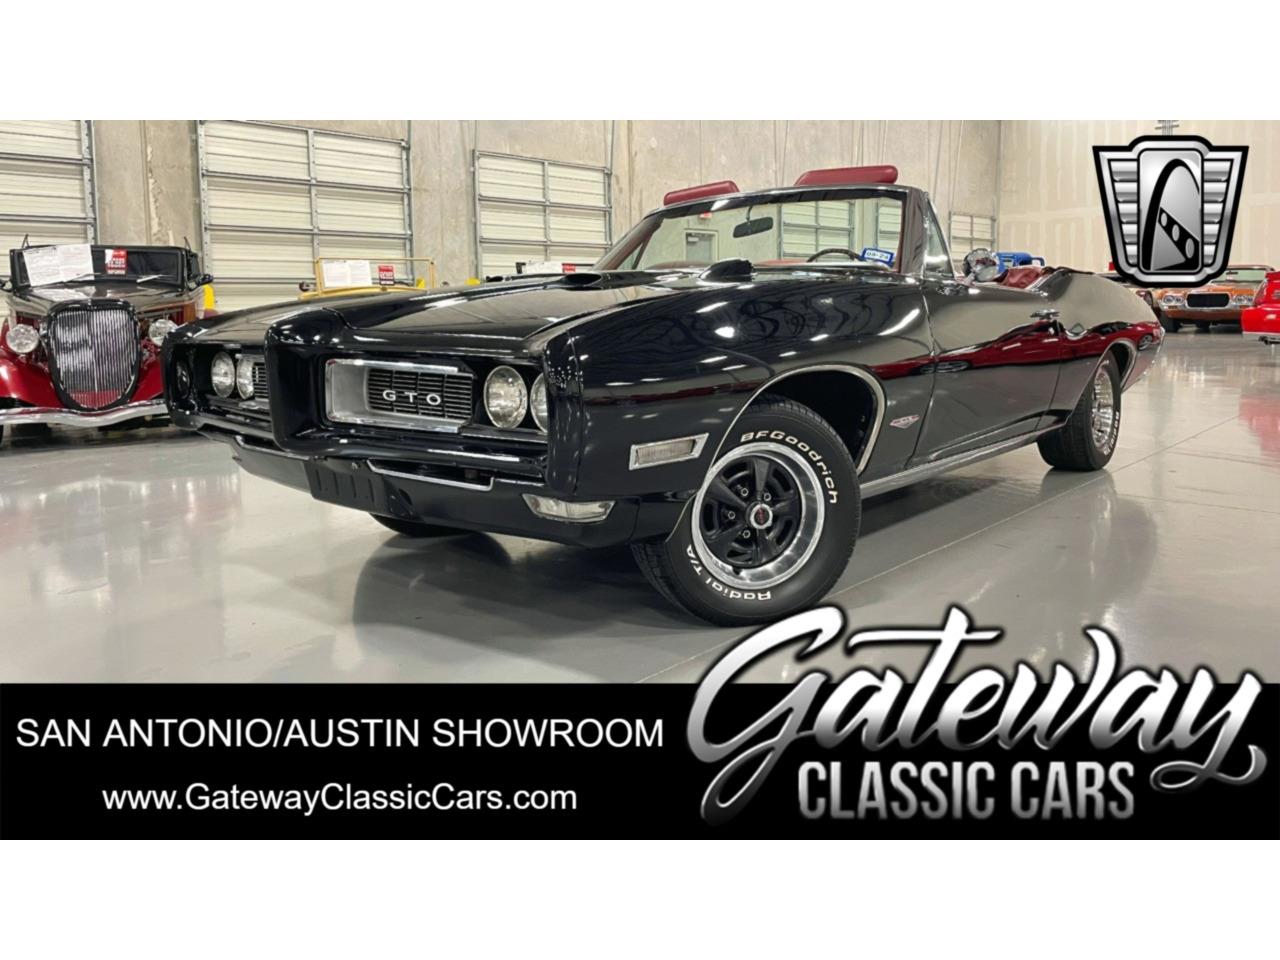 For Sale: 1968 Pontiac GTO in O'Fallon, Illinois for sale in O Fallon, IL